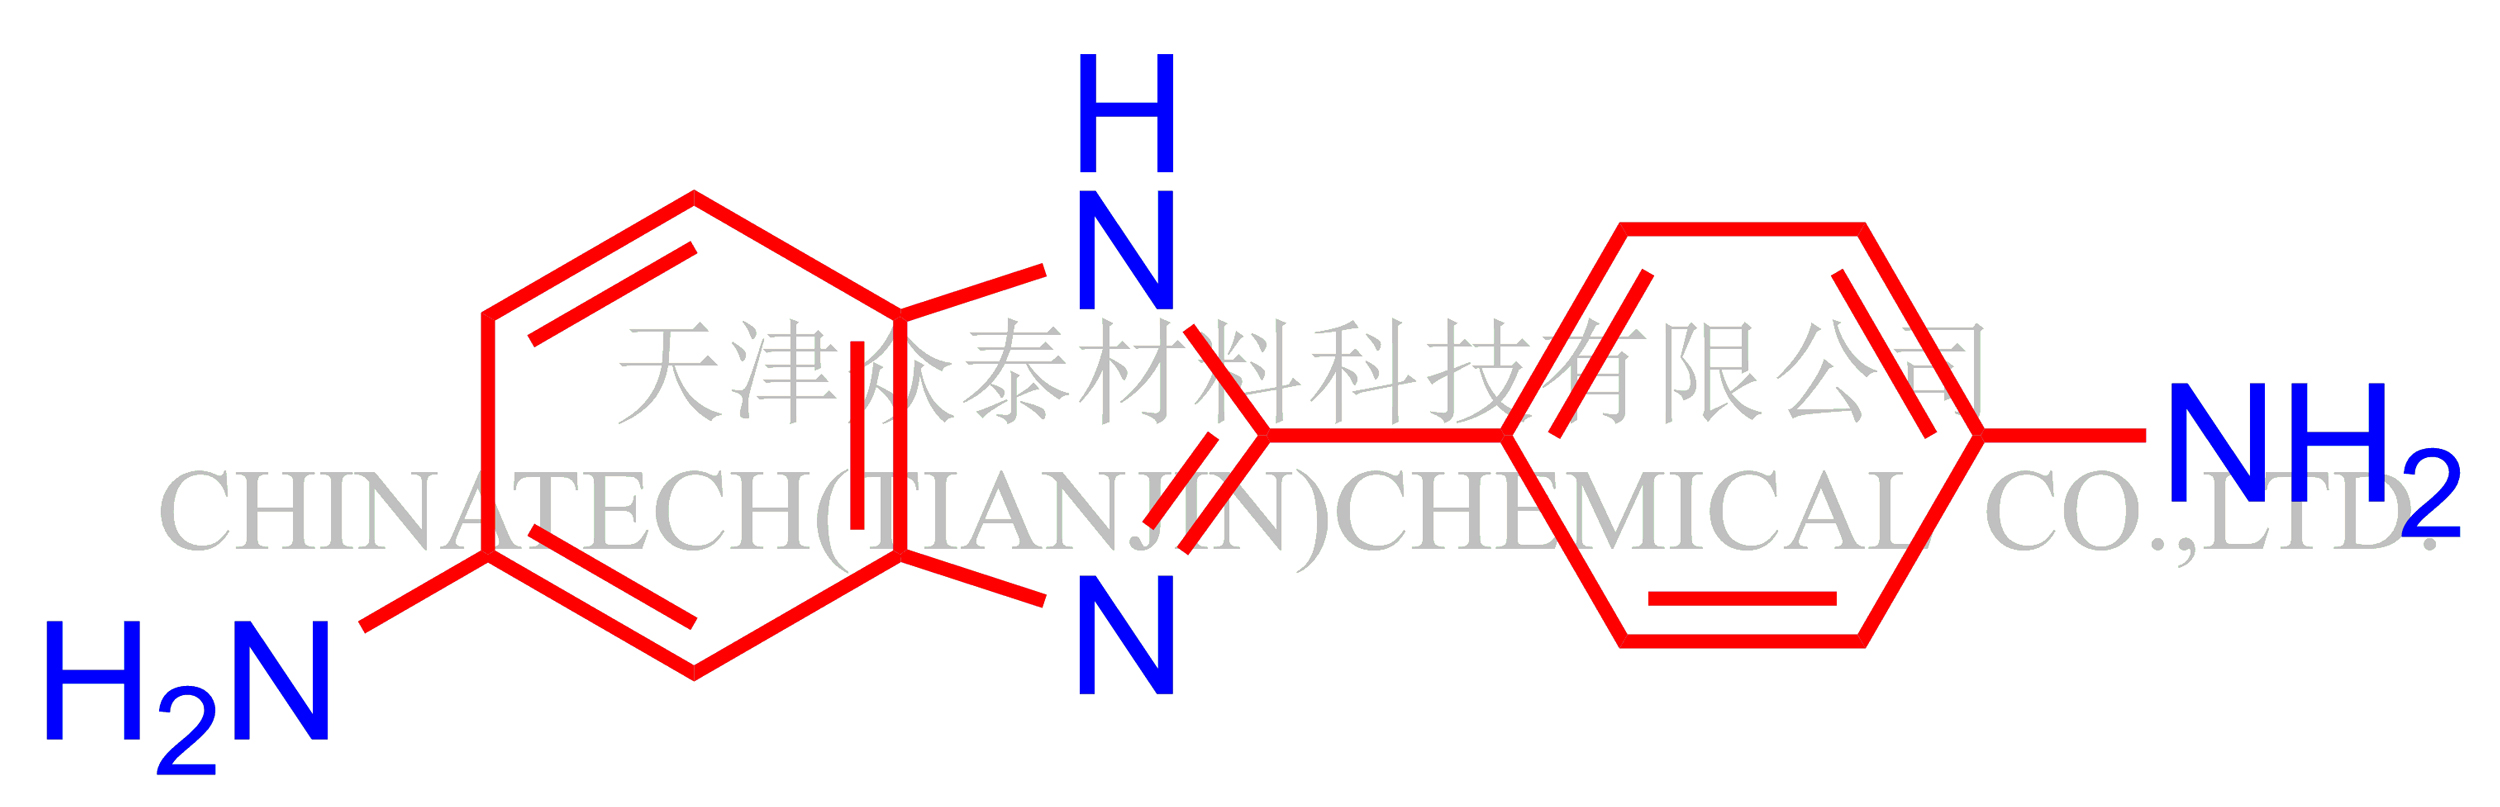 2-(4-氨基苯基)-5-氨基苯并咪唑(APBIA),2-(4-Aminophenyl)-1H- benzimidazol-5-amine (APBIA)